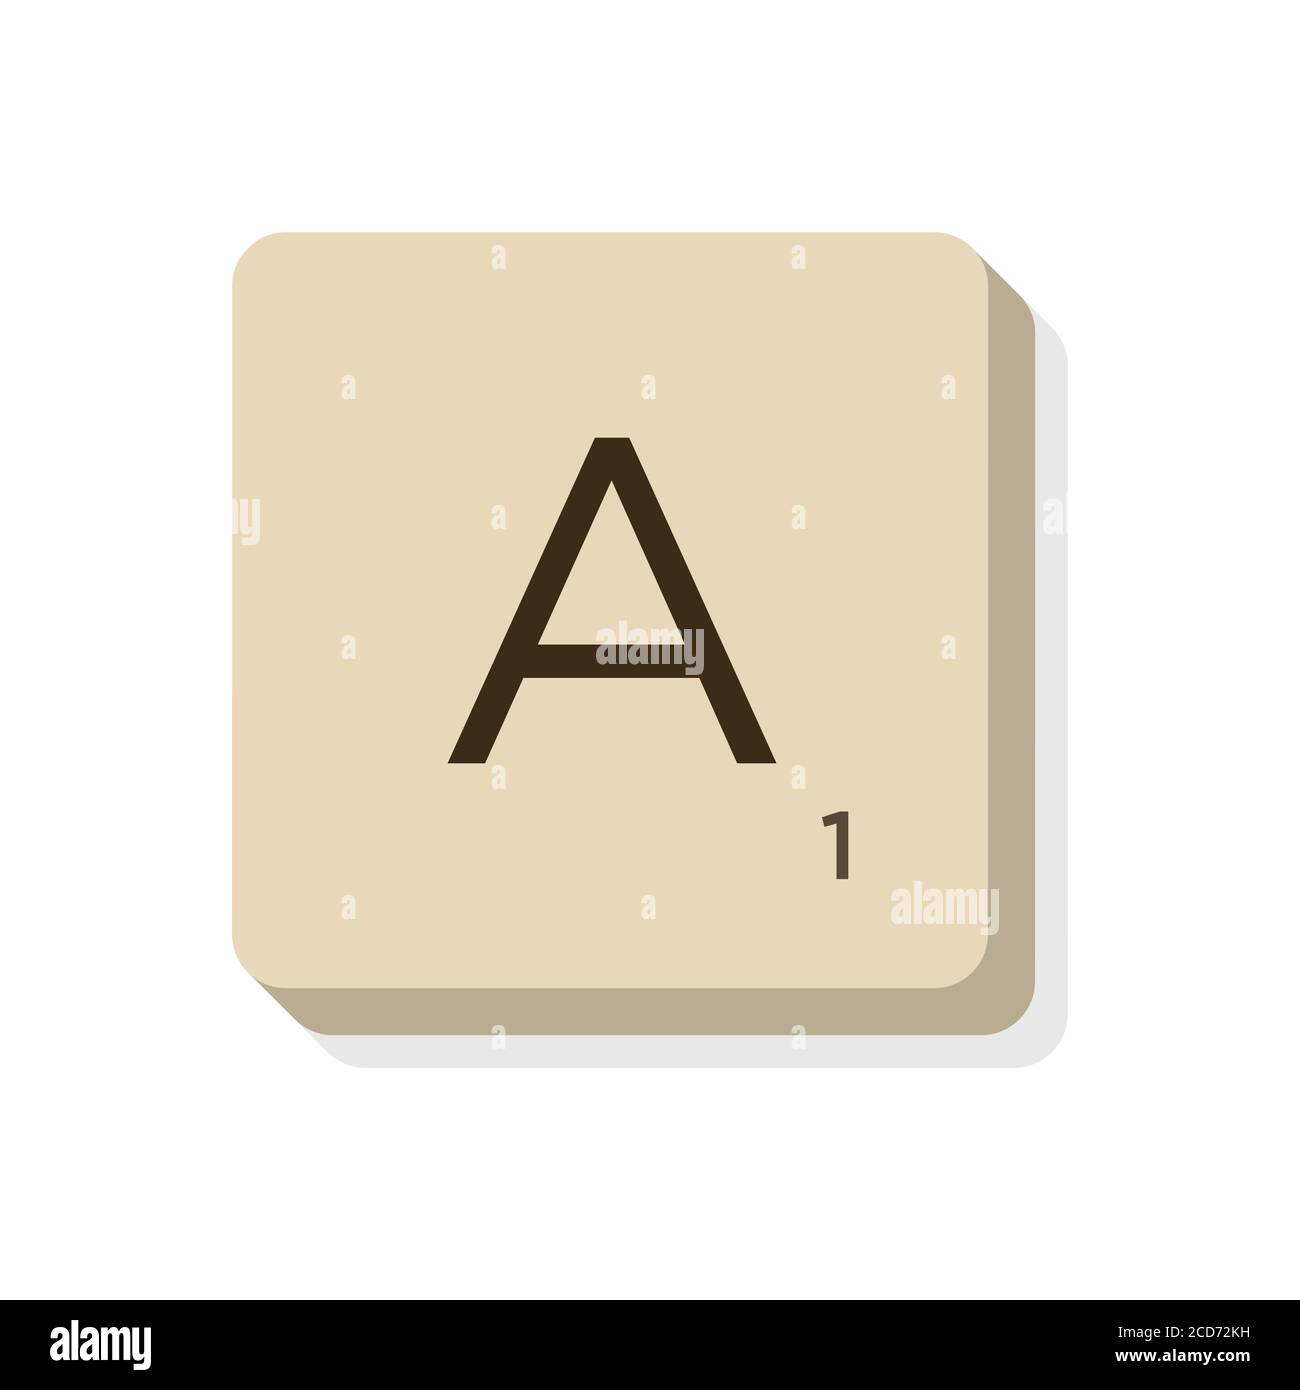 Lettera A in alfabeto scrabble. Isolare l'illustrazione vettoriale per comporre parole e frasi personalizzate. Illustrazione Vettoriale